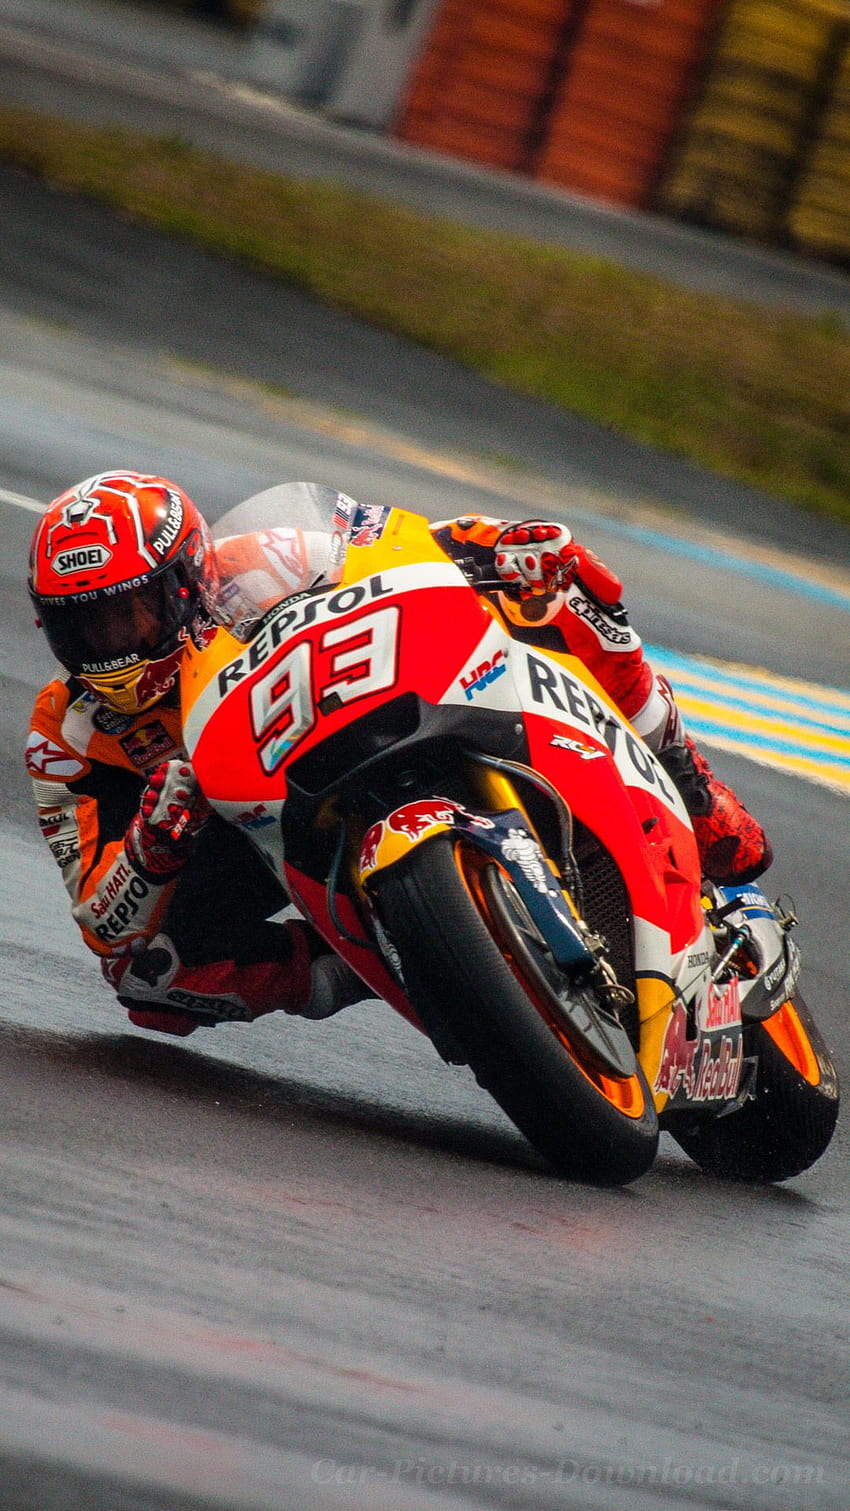 48+] MotoGP Wallpaper HD - WallpaperSafari